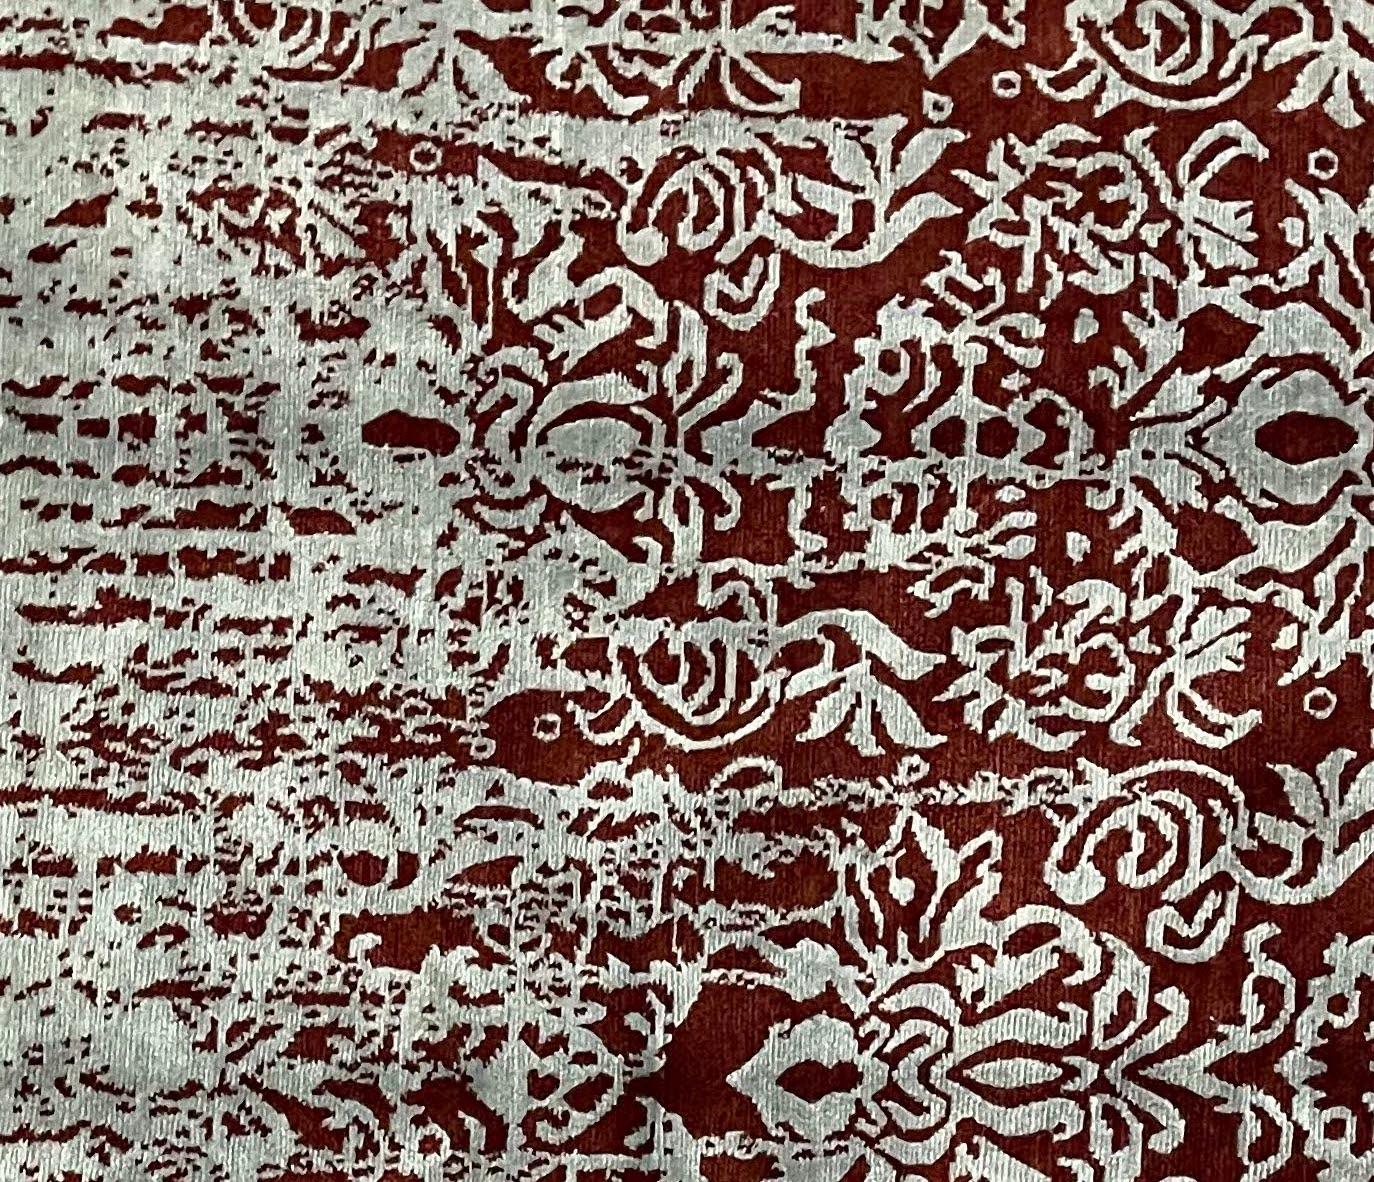 Nepal ist bekannt für seine hochwertigen handgeknüpften Produkte. Dieser Teppich ist aus hochwertiger Tibet Hochland Wolle  und Bambus-Seide gefertigt. Die Verwendung hochwertiger MATERIALIEN traditioneller Knüpftechniken tragen zur Haltbarkeit,